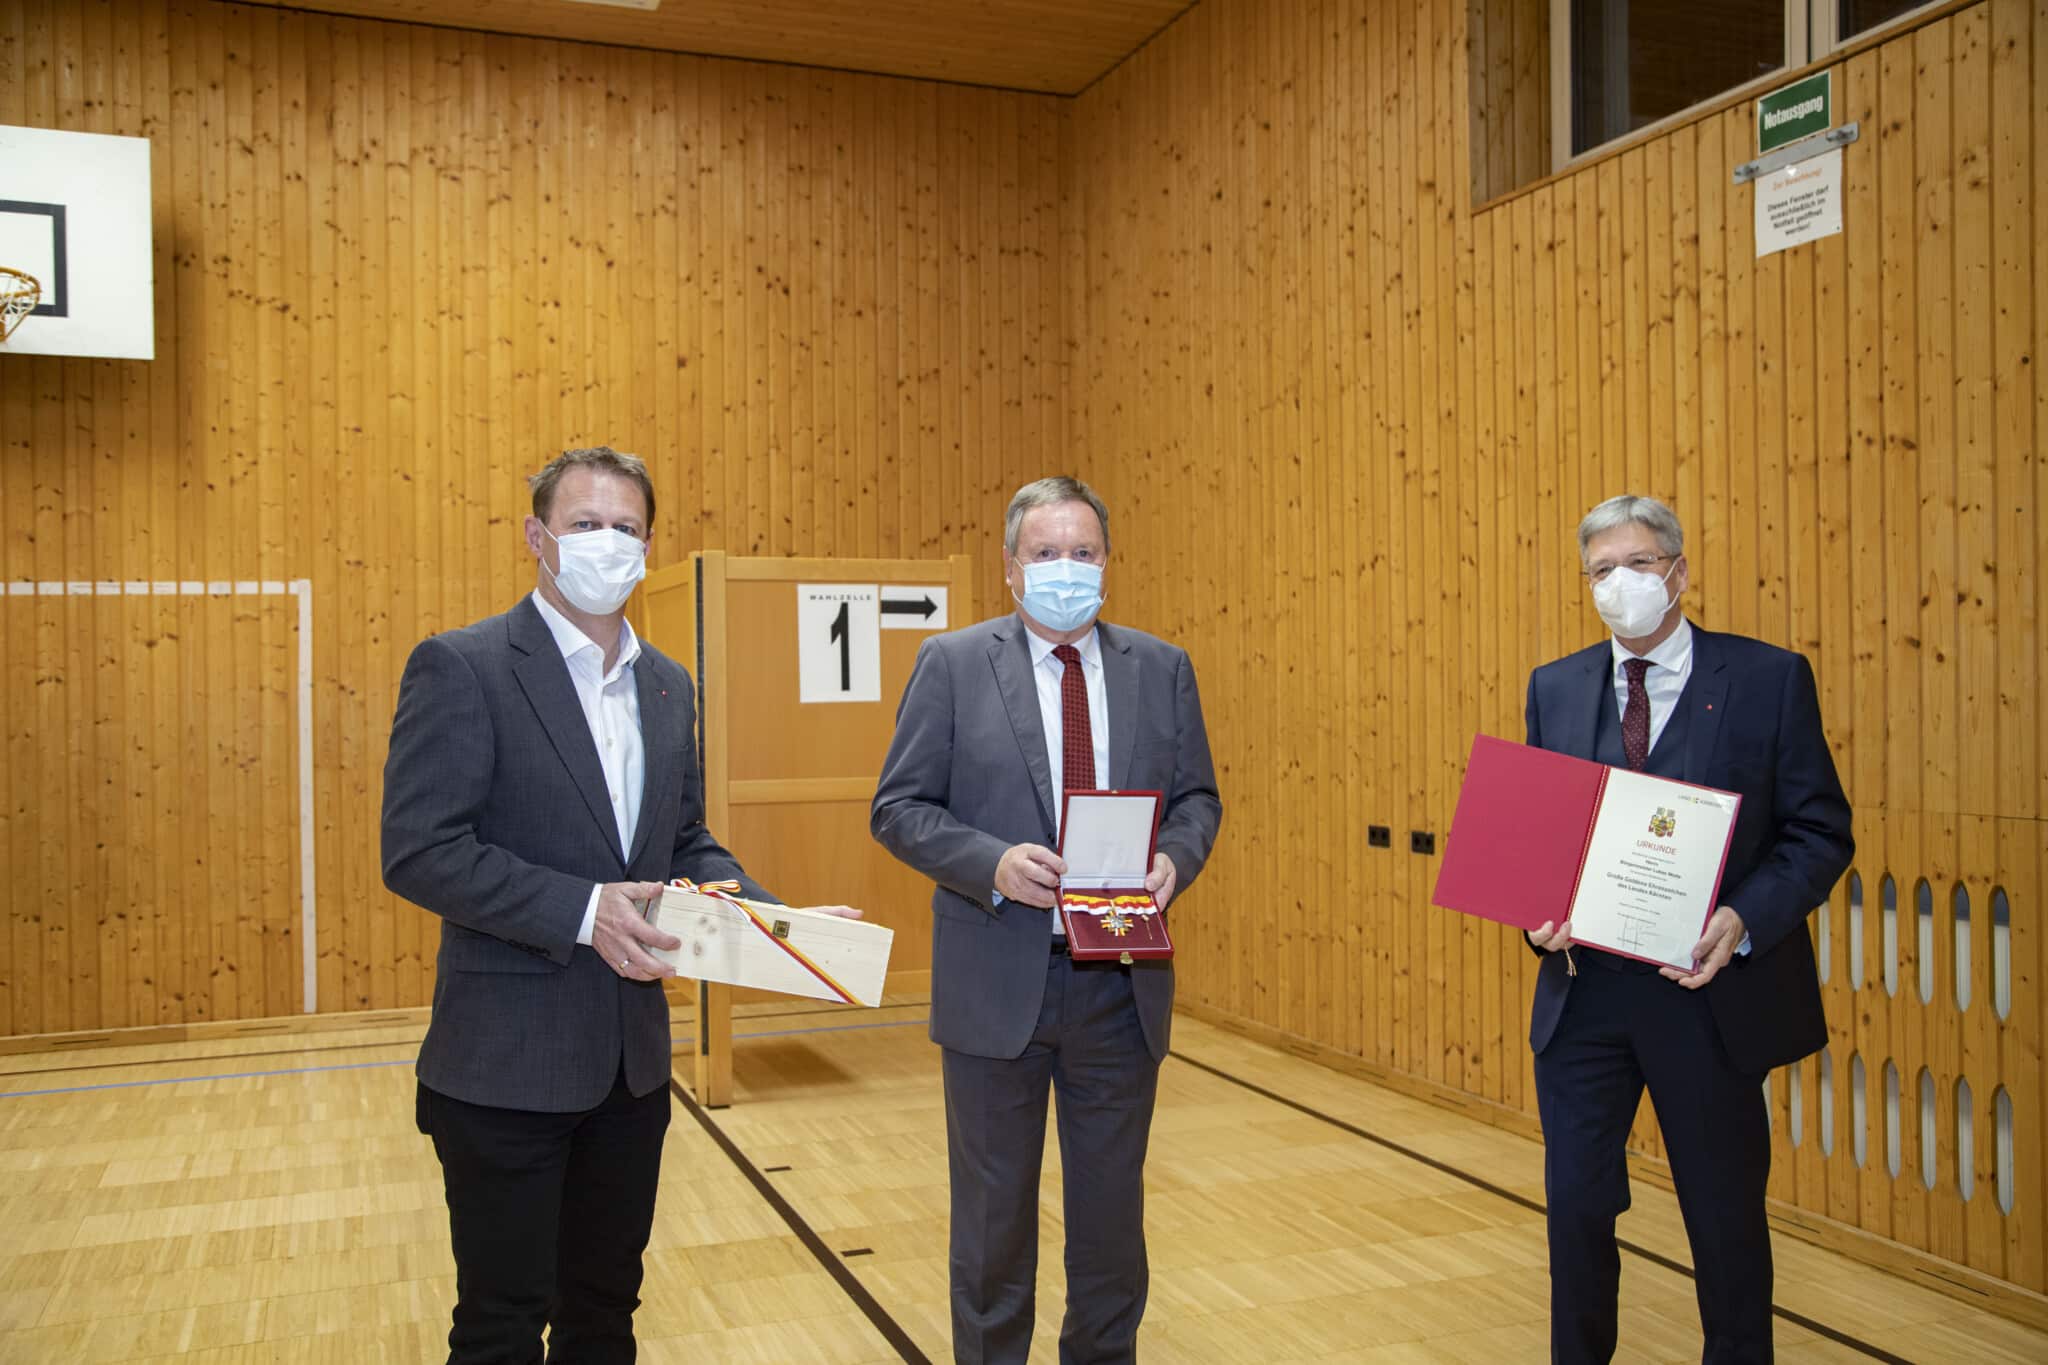 Altbürgermeister Lukas Wolte (Bildmitte) mit seinem Nachfolger Helmut Ogris und LH Peter Kaiser erhält das goldene Ehrenzeichen des Landes für seine 22 Jahre als Bürgermeister von St. Margarethen im Rosental.